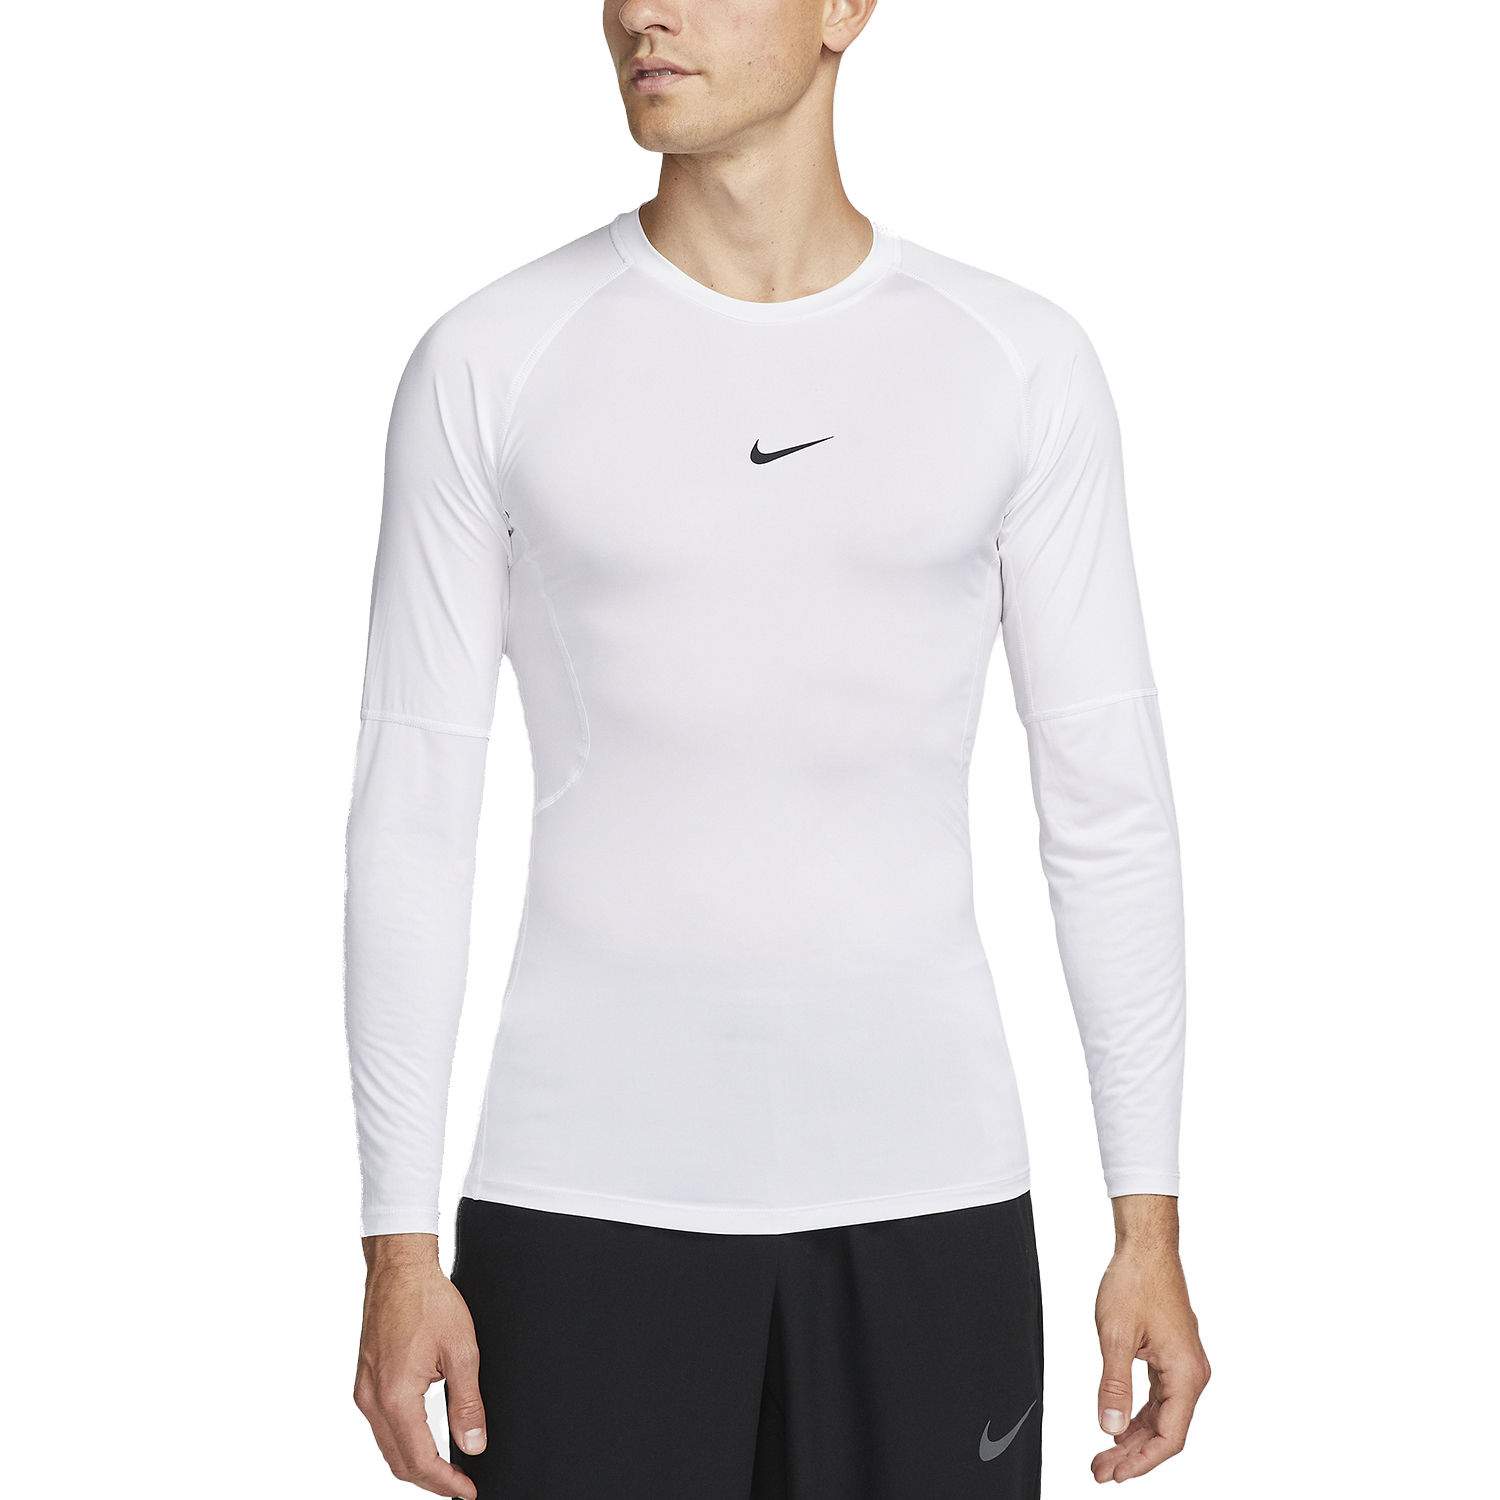 Nike Dri-FIT Logo Men's Training Shirt - White/Black